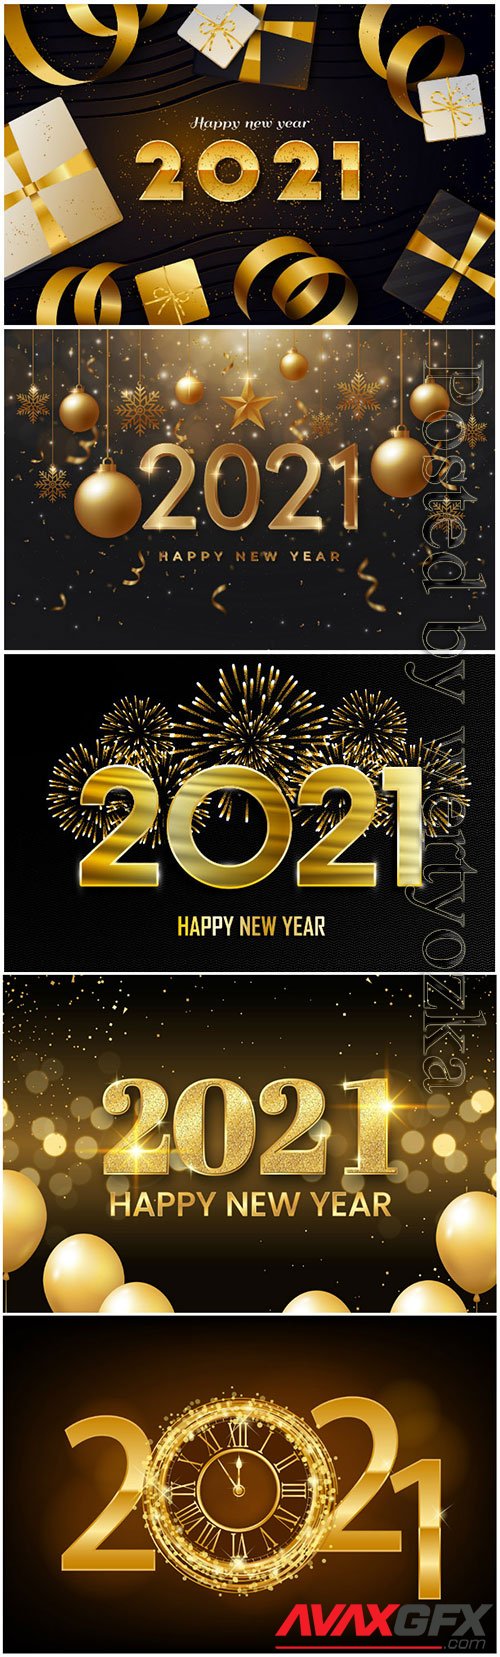 Golden new year 2021 premium vector